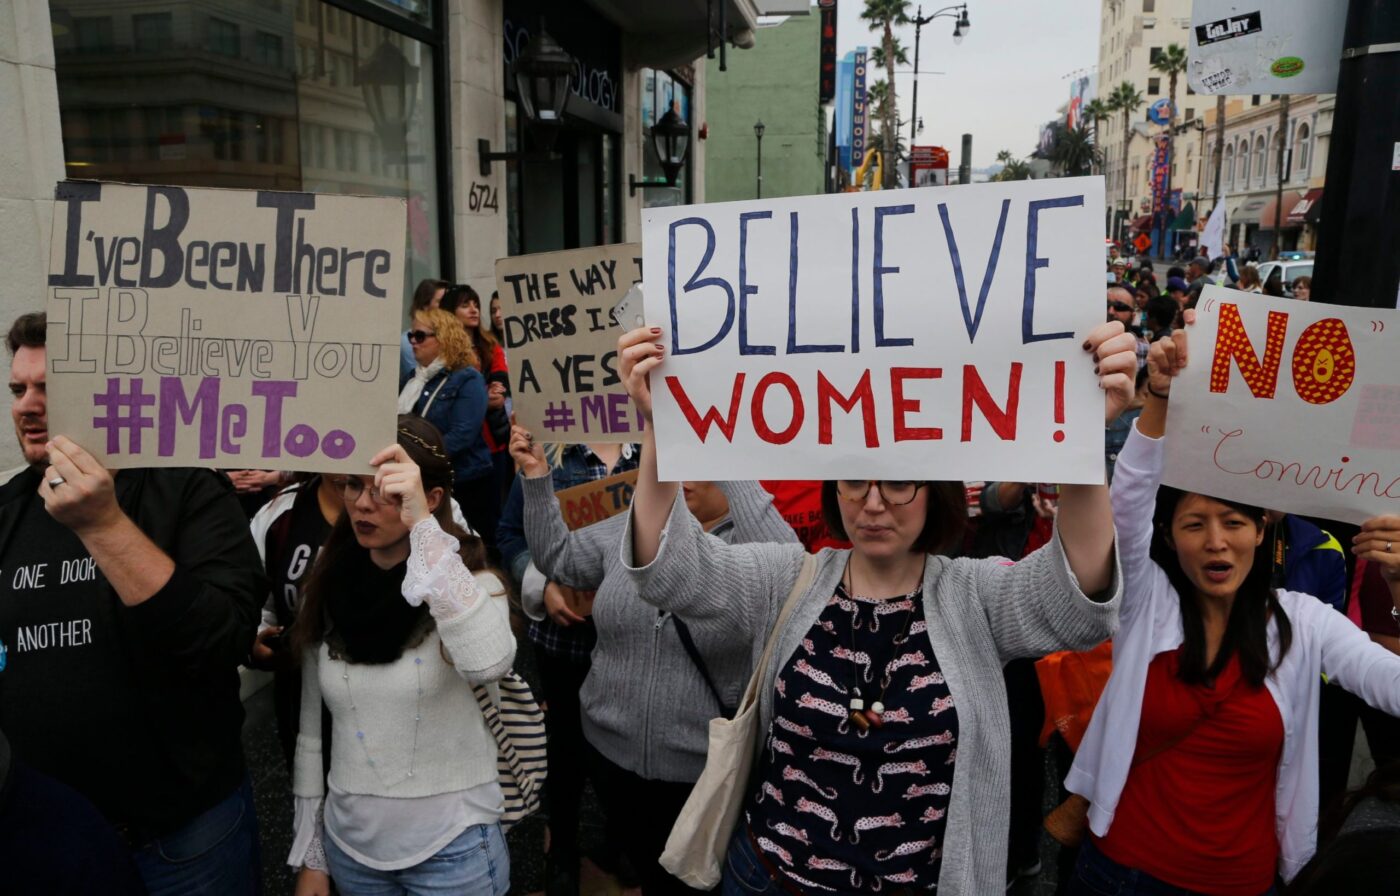 #Believe Women or #Believe Evidence?